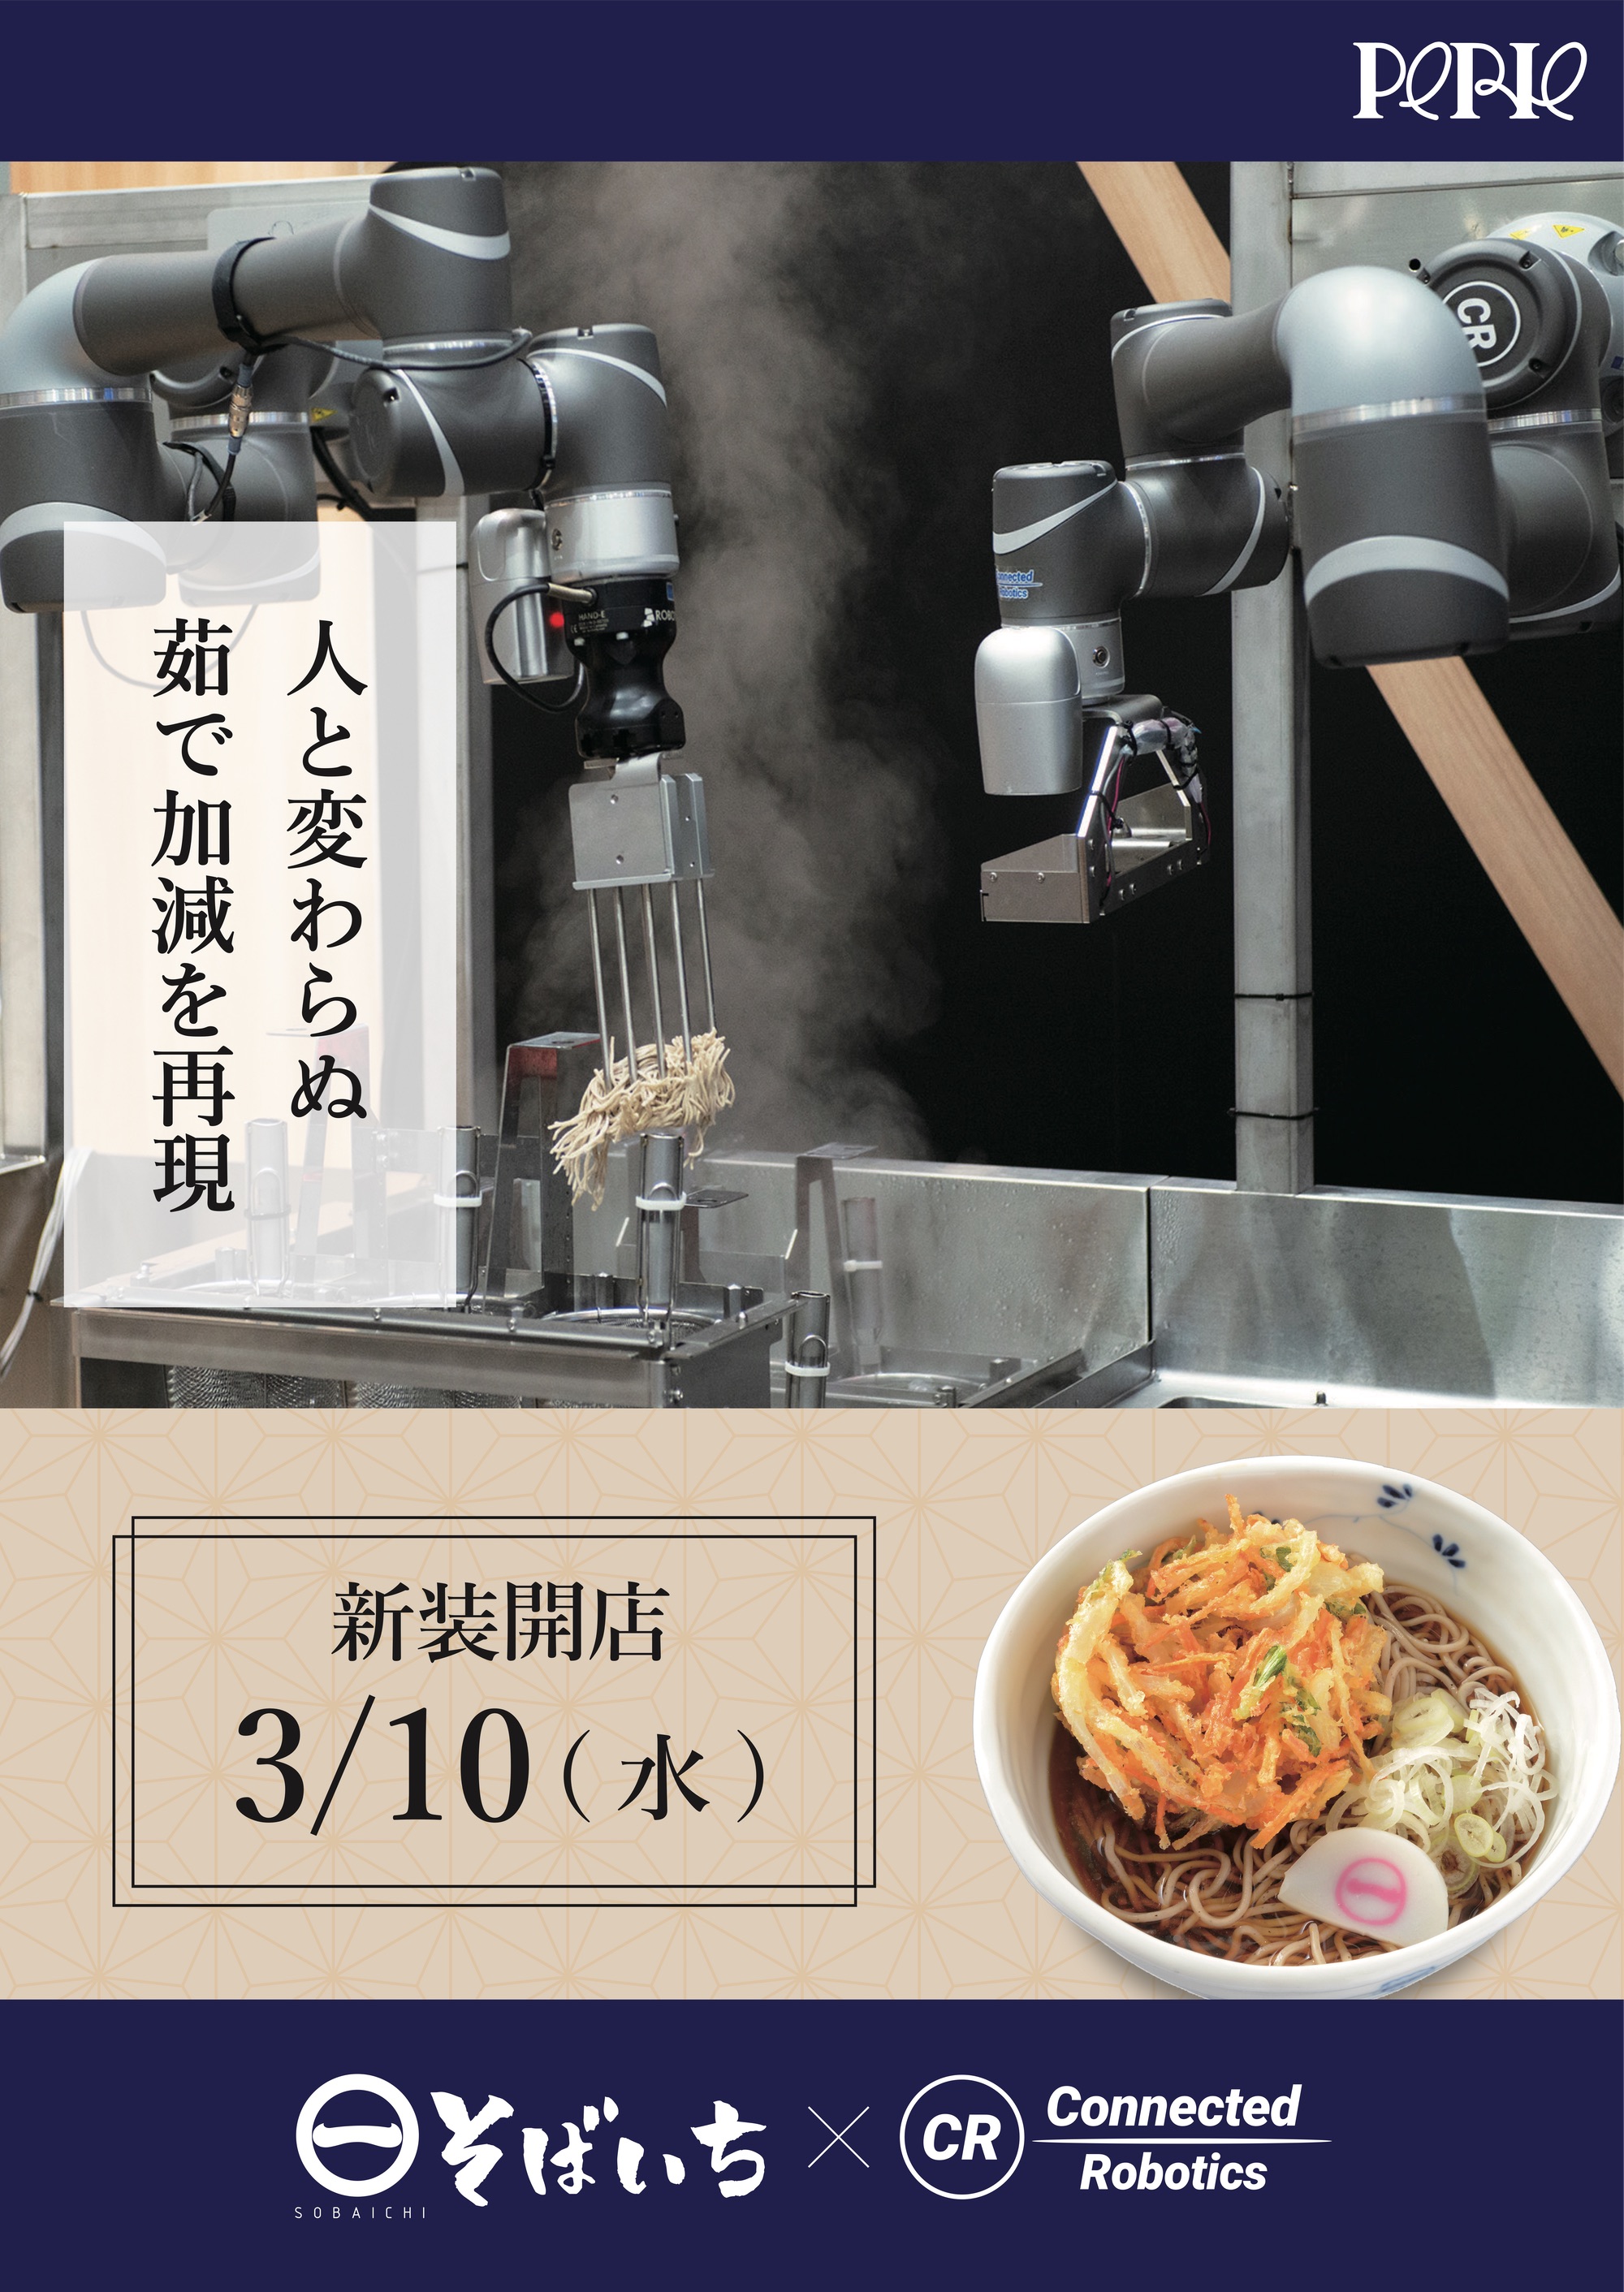 Die Werbung für das Restaurant Soba-ichi mit dem neuen Roboter im Bahnhof Kaihinmakuhari.